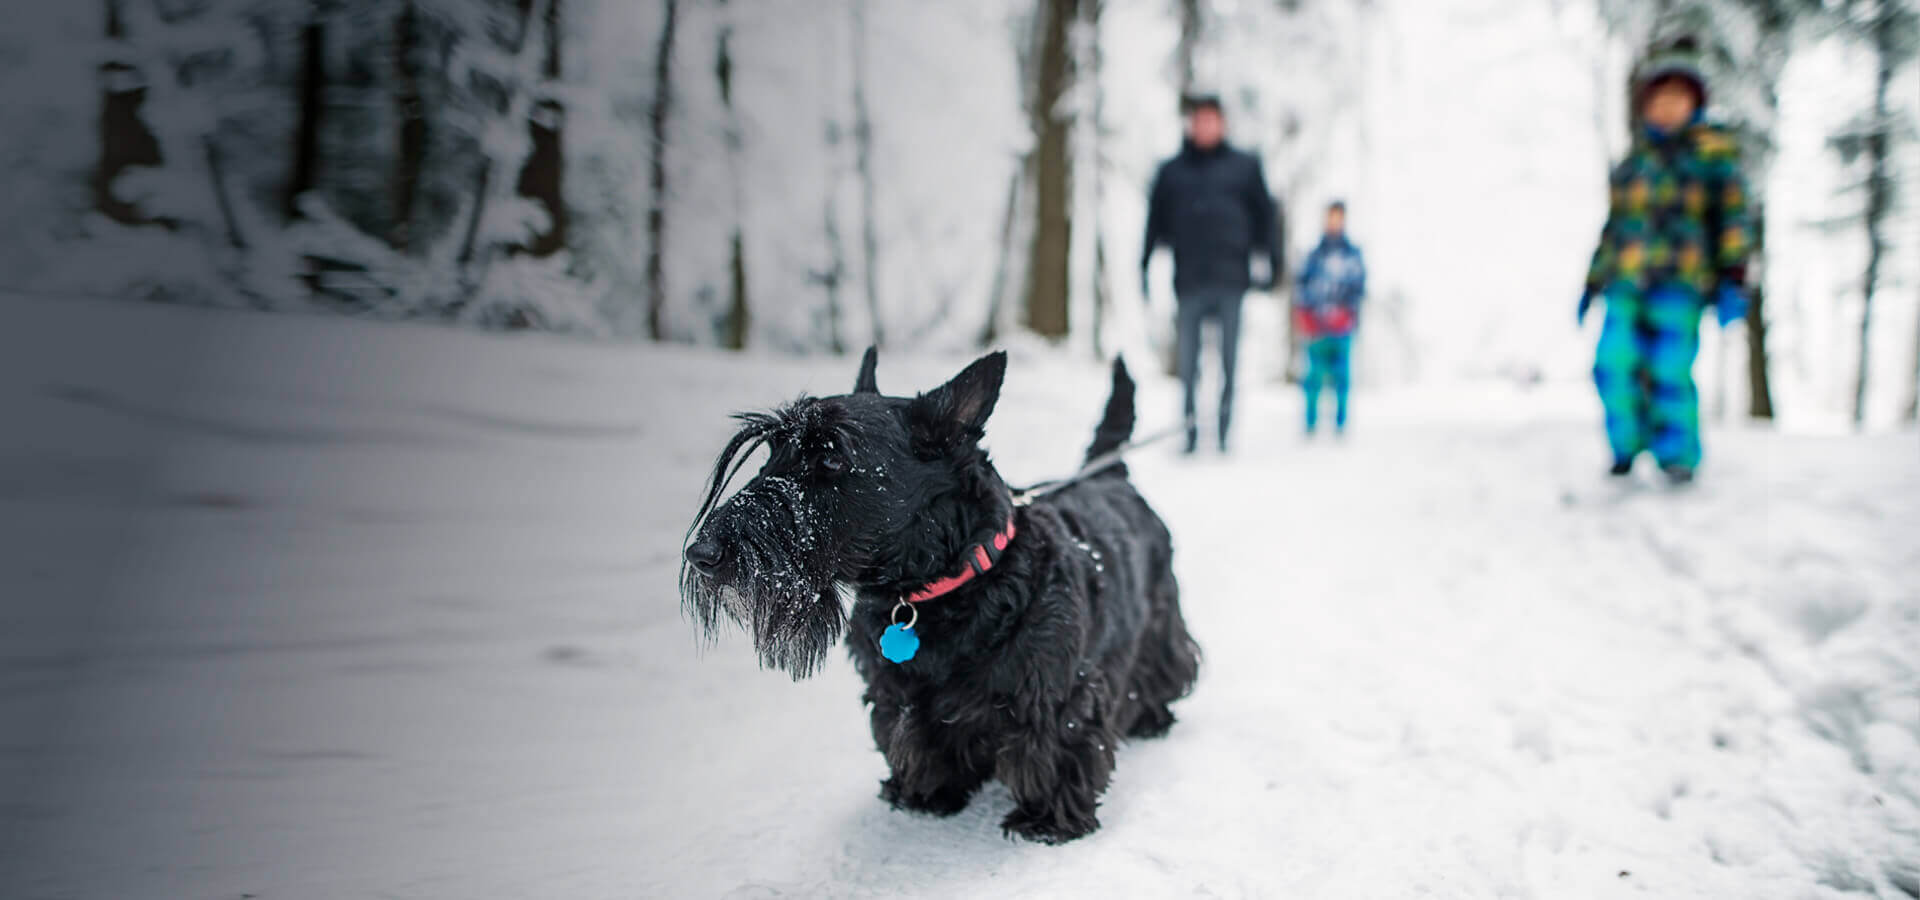 Eine Familie ist an einem verschneiten Tag im Wald spazieren. Im vorderen Bereich des Bildes ist ein Hund zu sehen.